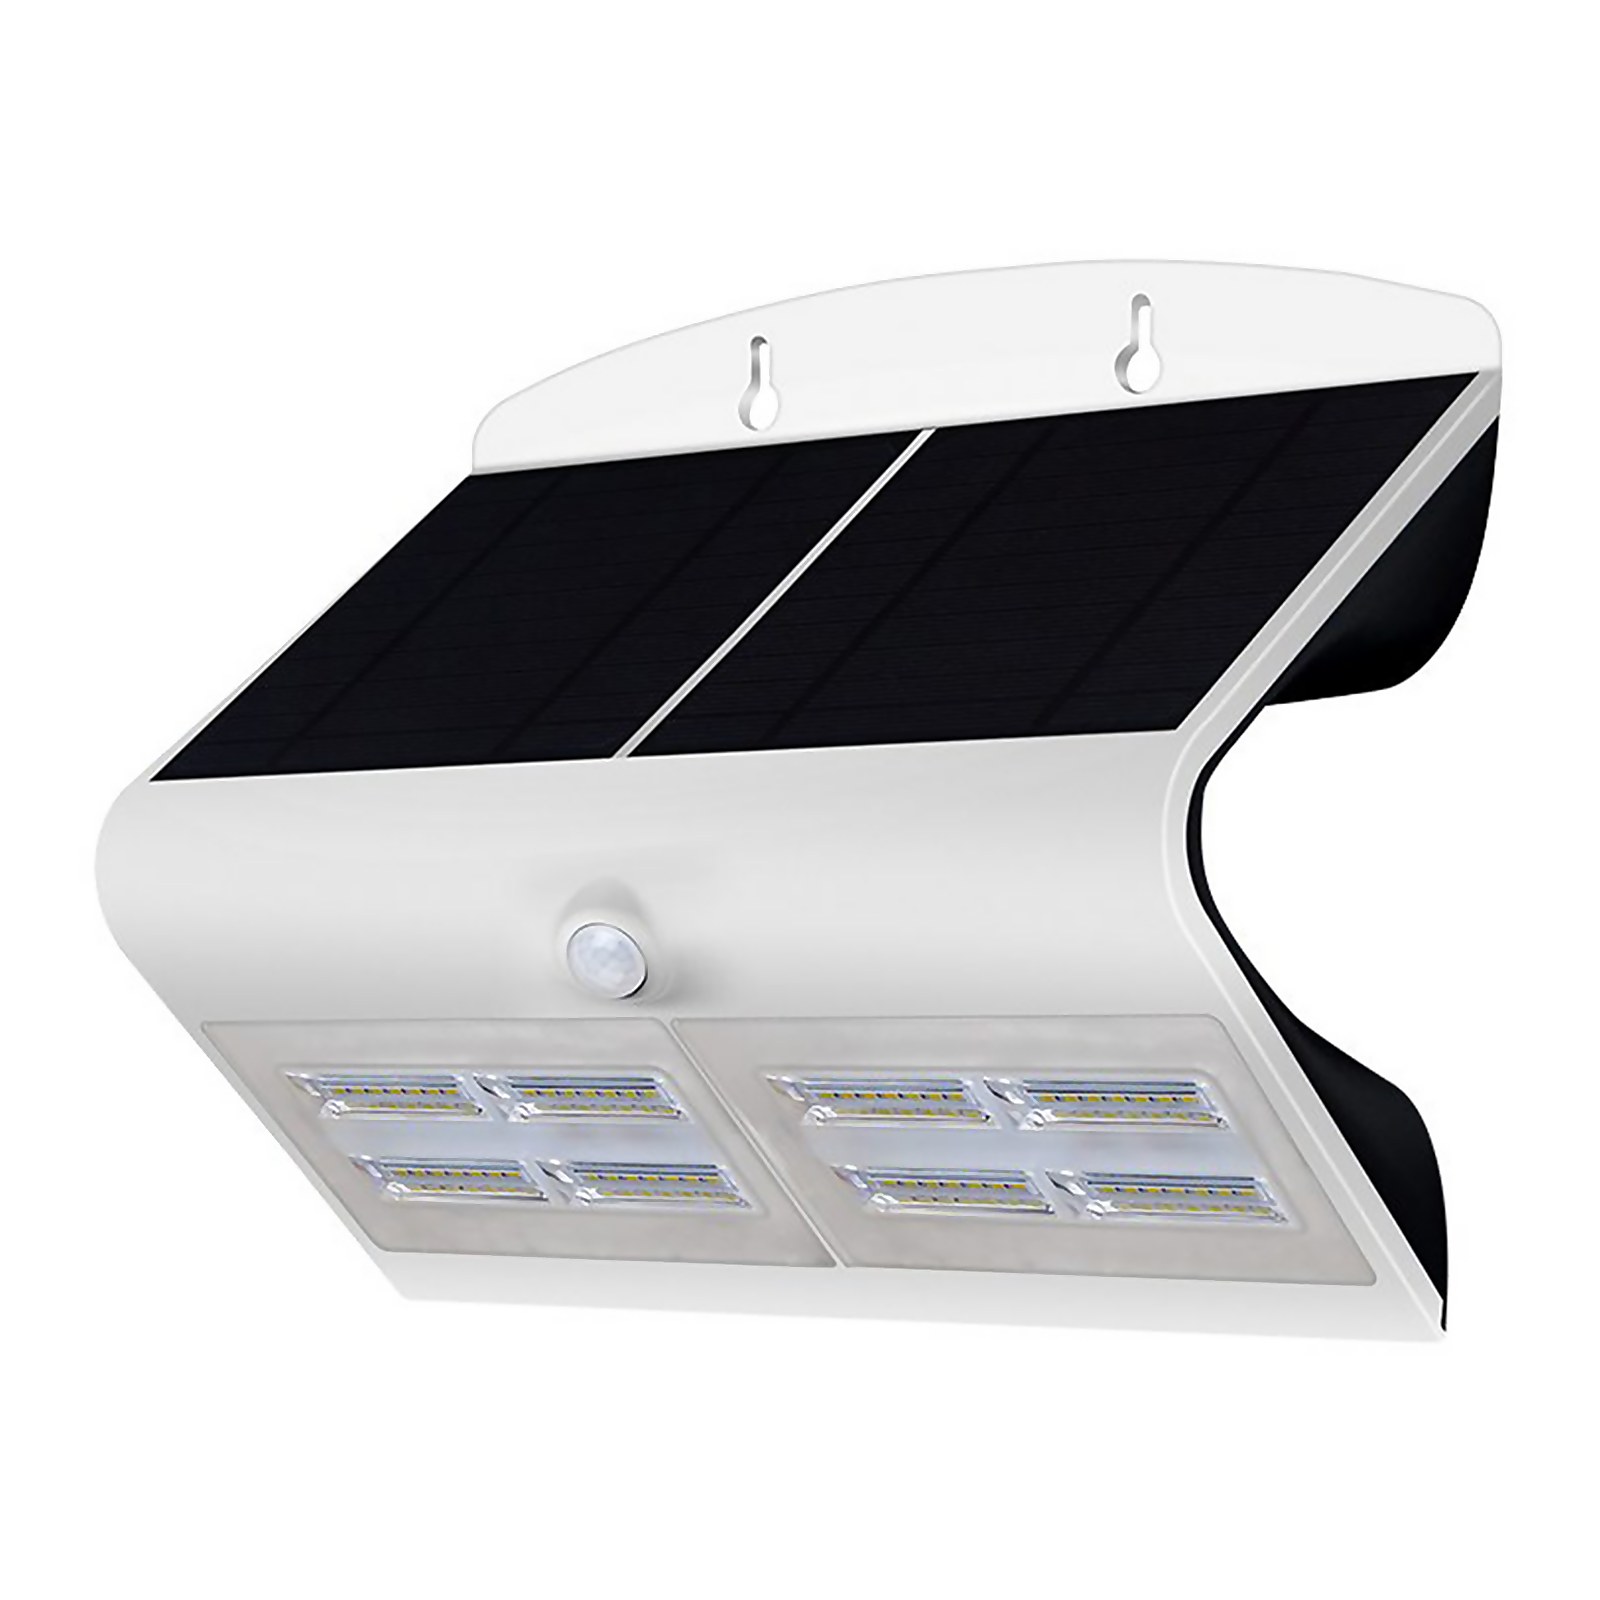 Photo of V-light Elite Solar Security Light